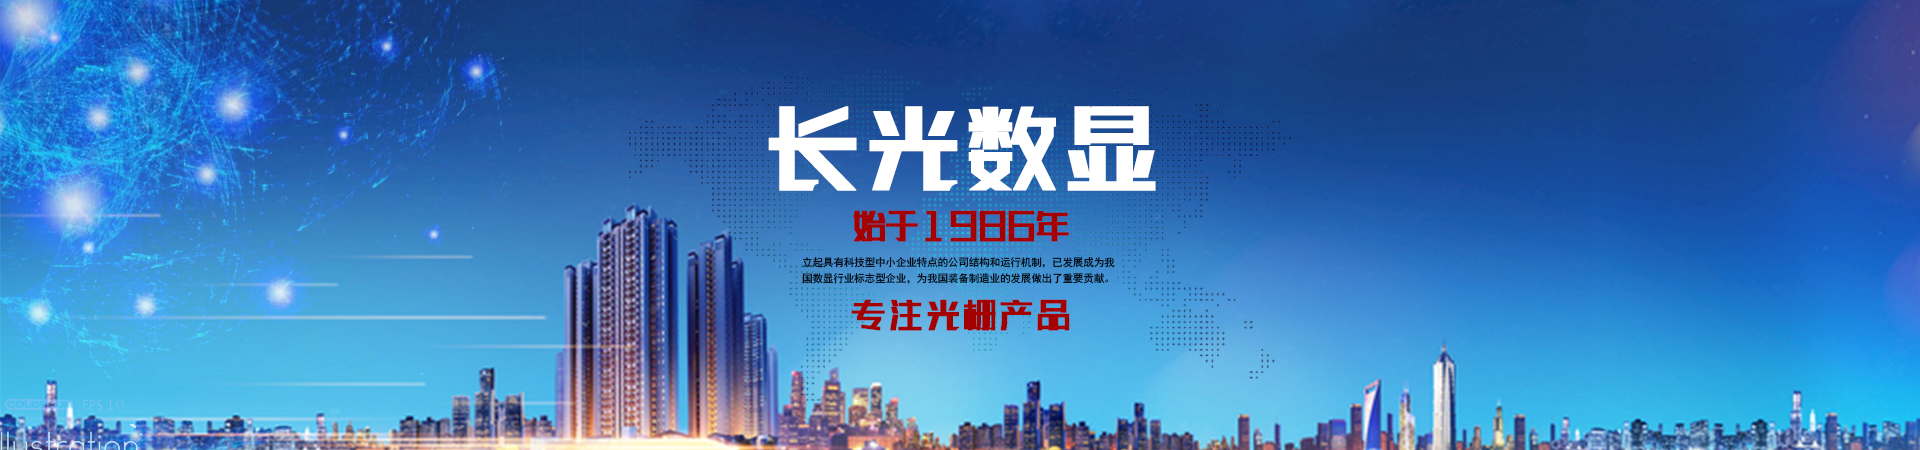 关于当前产品685151夜明珠25881·(中国)官方网站的成功案例等相关图片